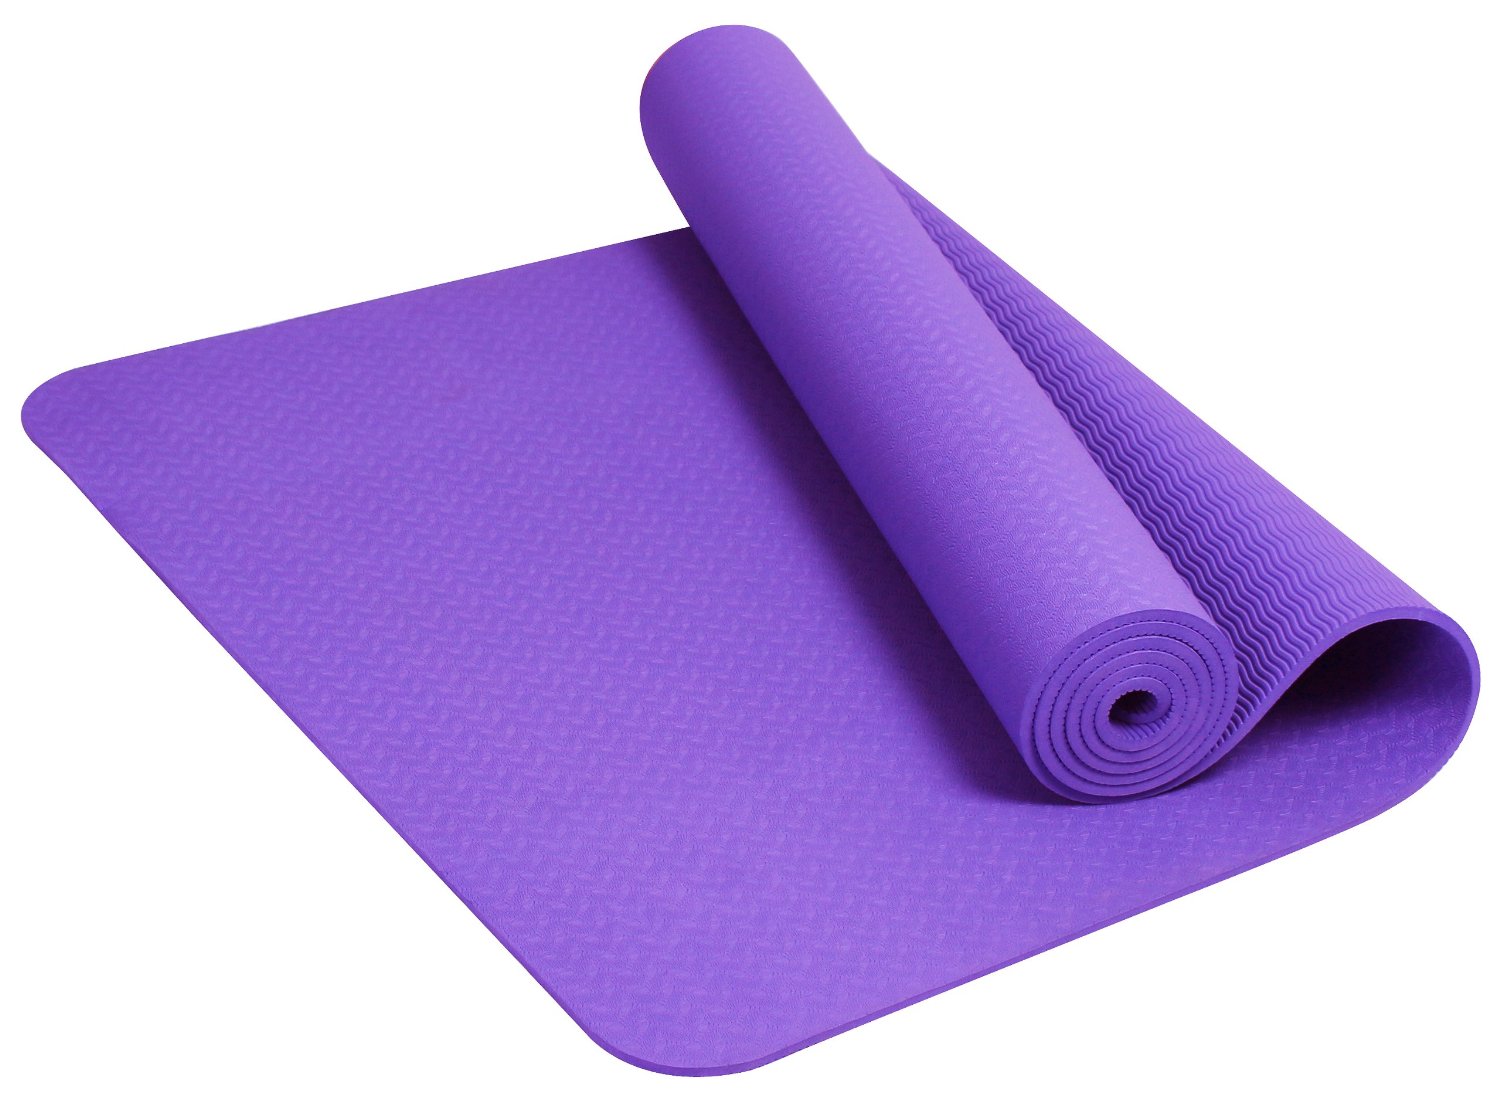 waterproof yoga mat